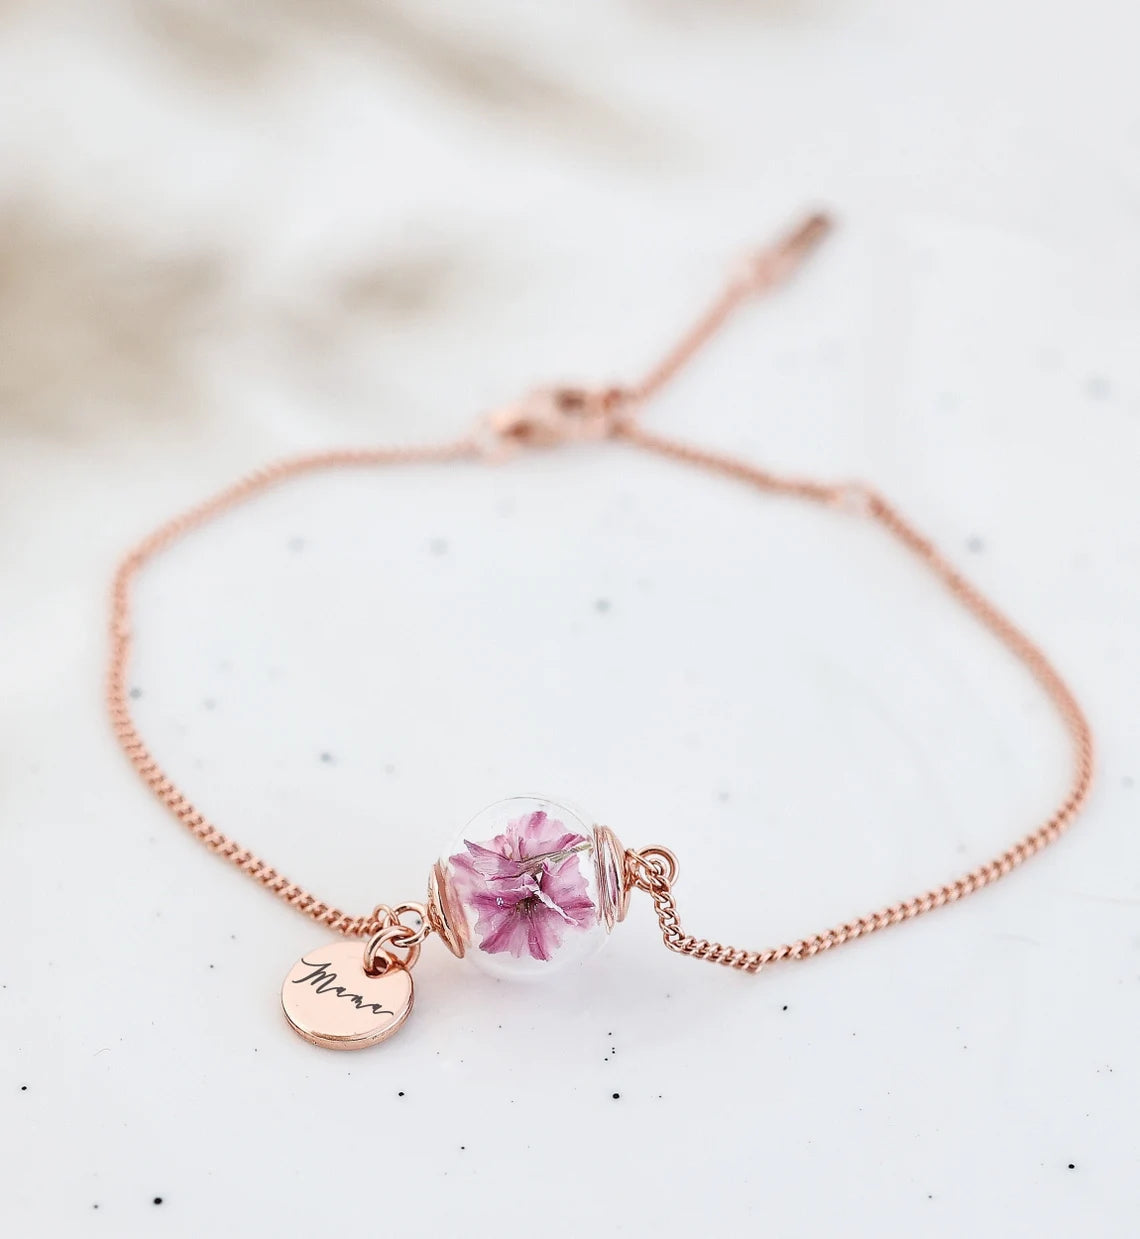 925er Silber Armband mit echten Blumen • Personalisierte Gravur • Strandflieder rosa • Hochzeit • Trauzeugin Geschenk • Mama Geschenk A186